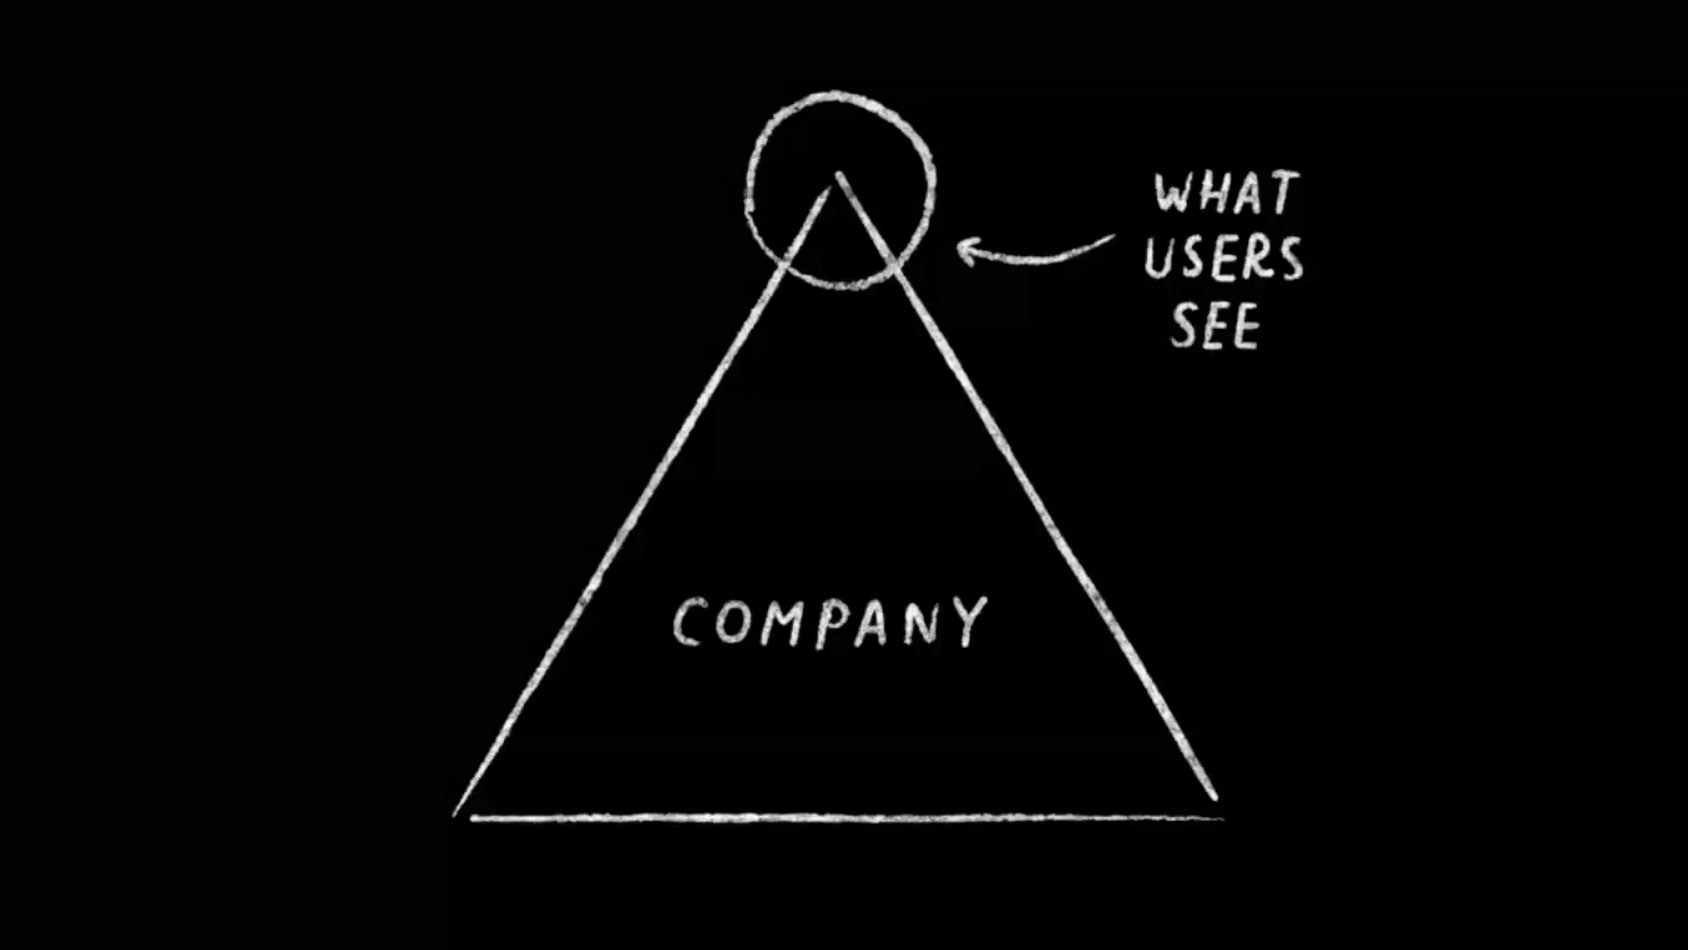 Robert Wong company graphic pyramid